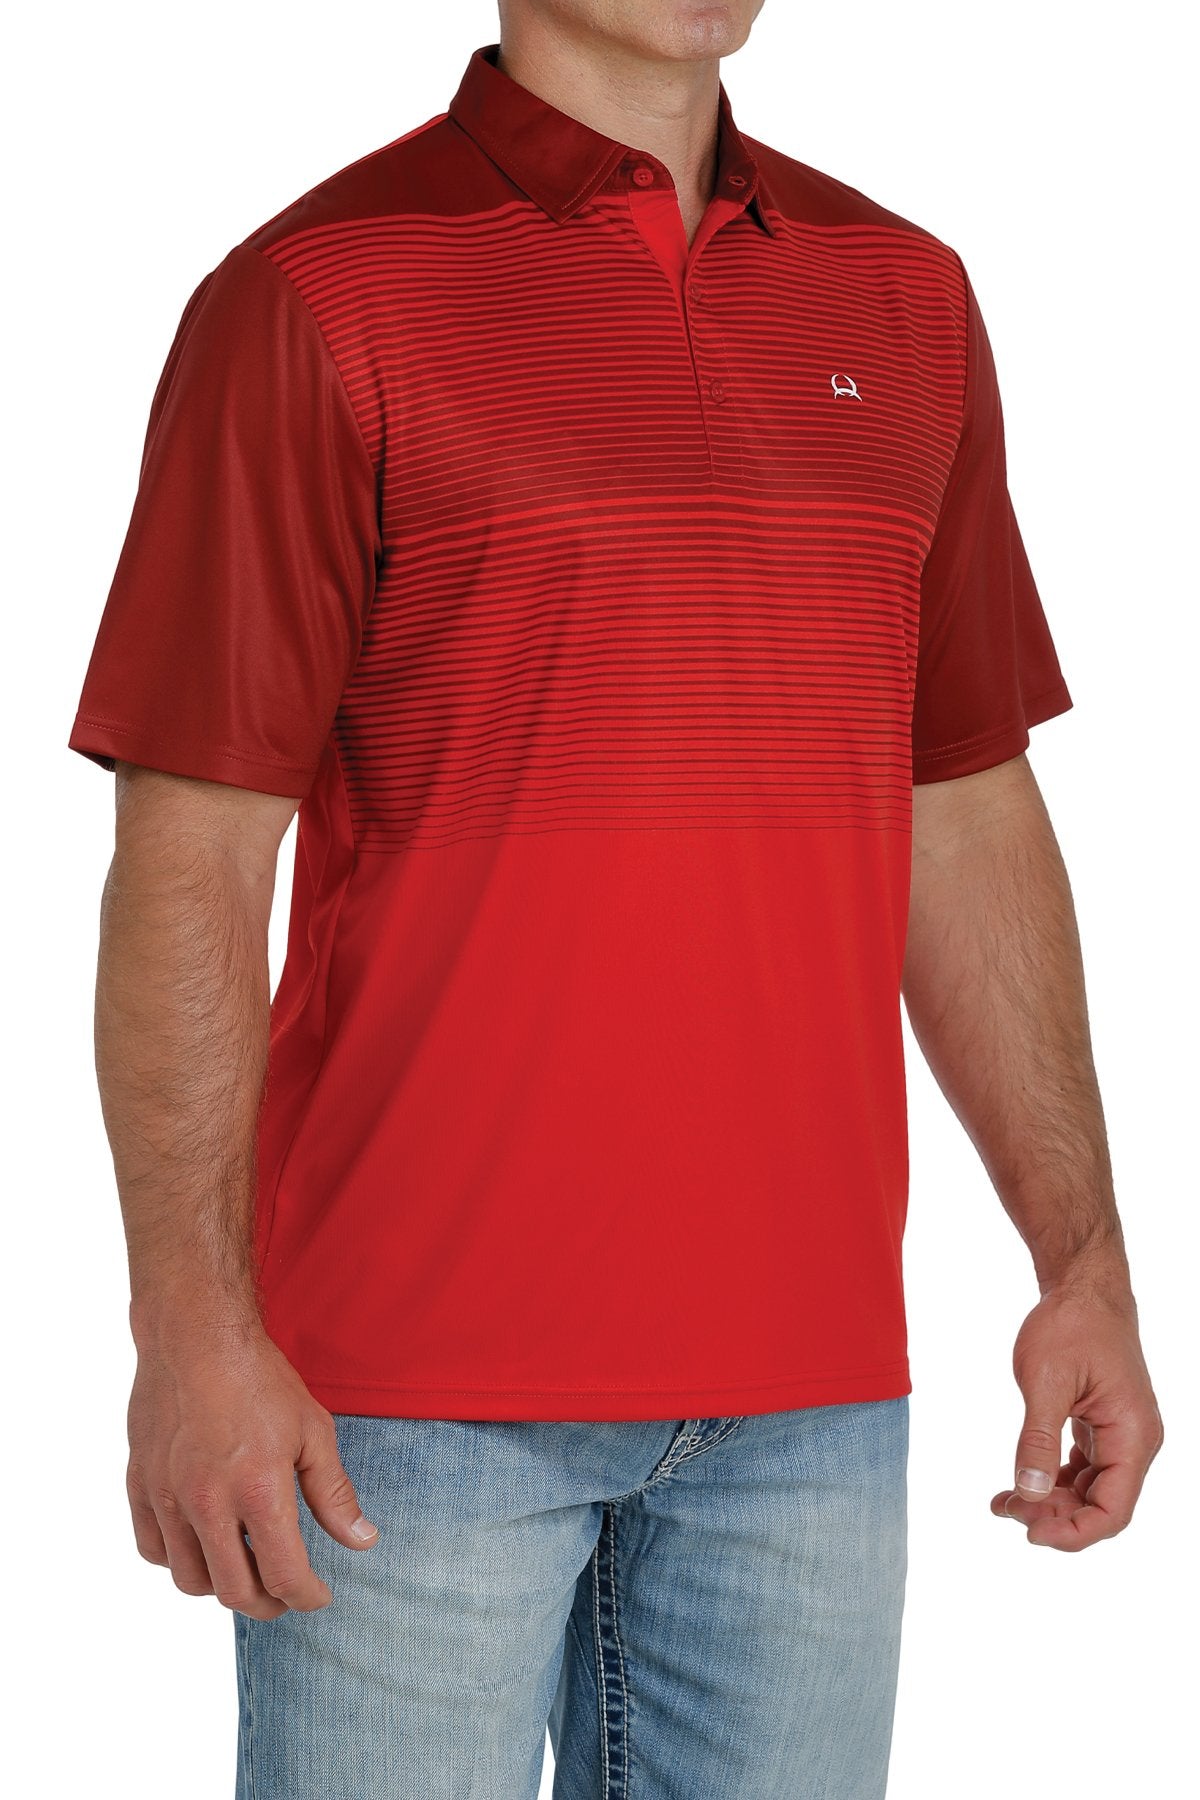 Men's Cinch Arenaflex Polo - Red Stripe